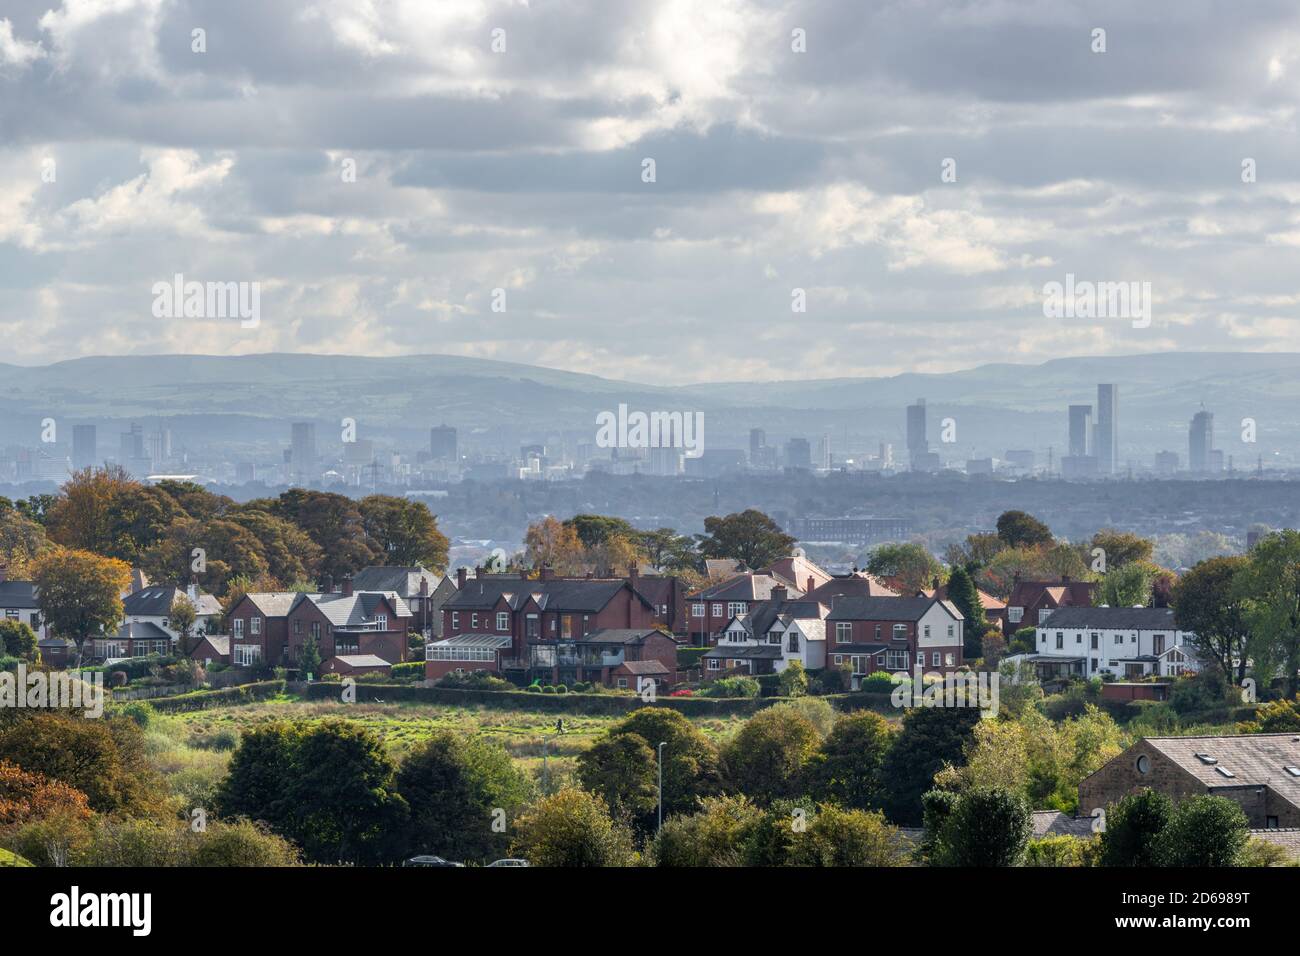 Lo skyline della città di Manchester visto dal nord-ovest con le case e le strade suburbane in primo piano, Inghilterra Regno Unito Foto Stock